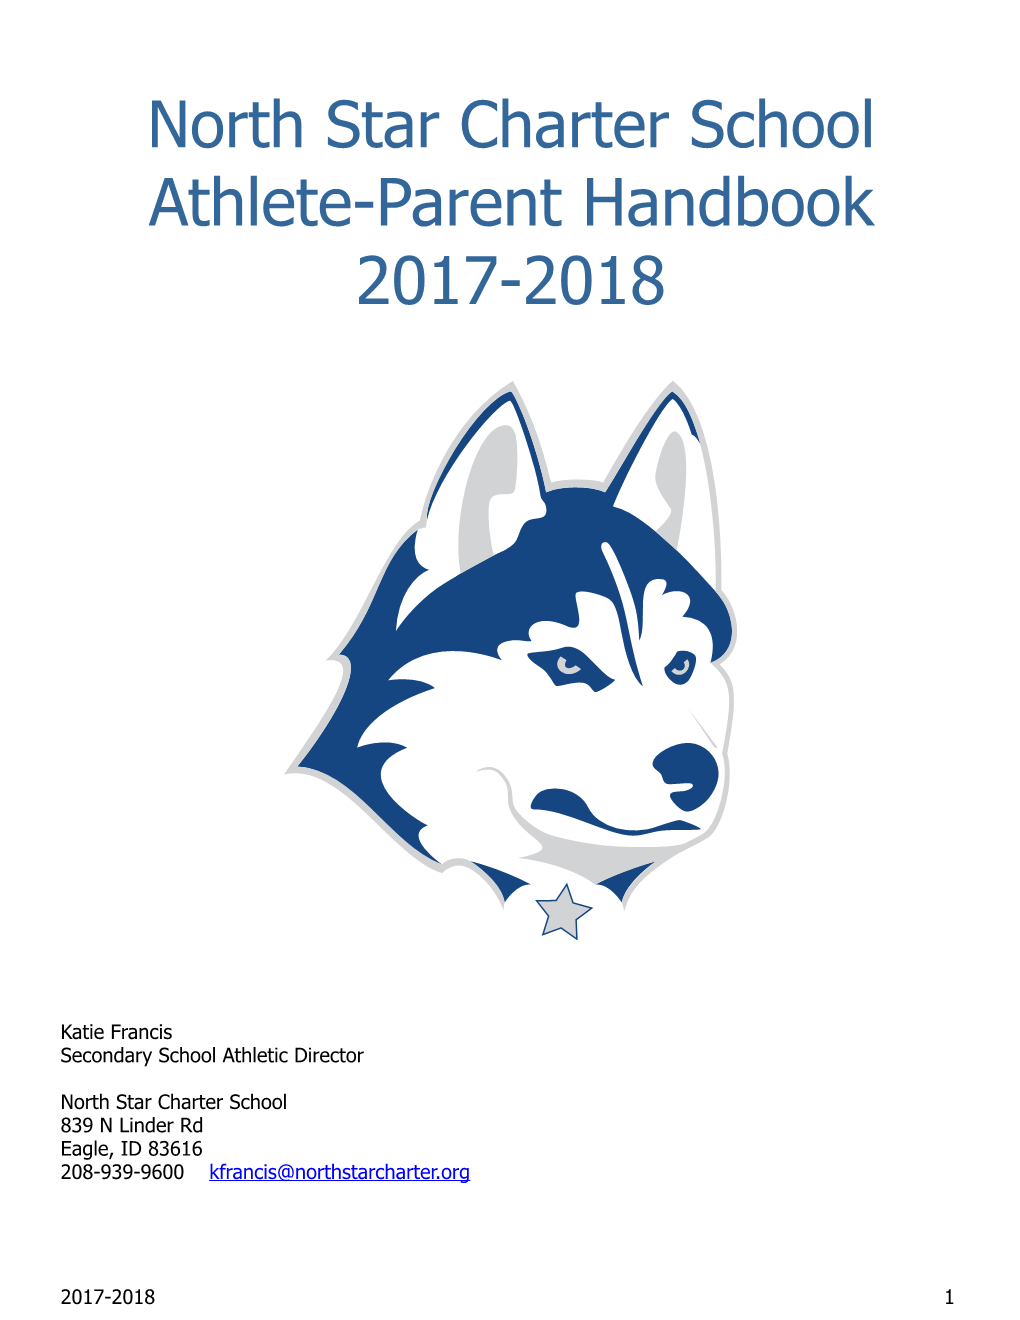 North Star Charter School Athlete-Parent Handbook 2017-2018 !